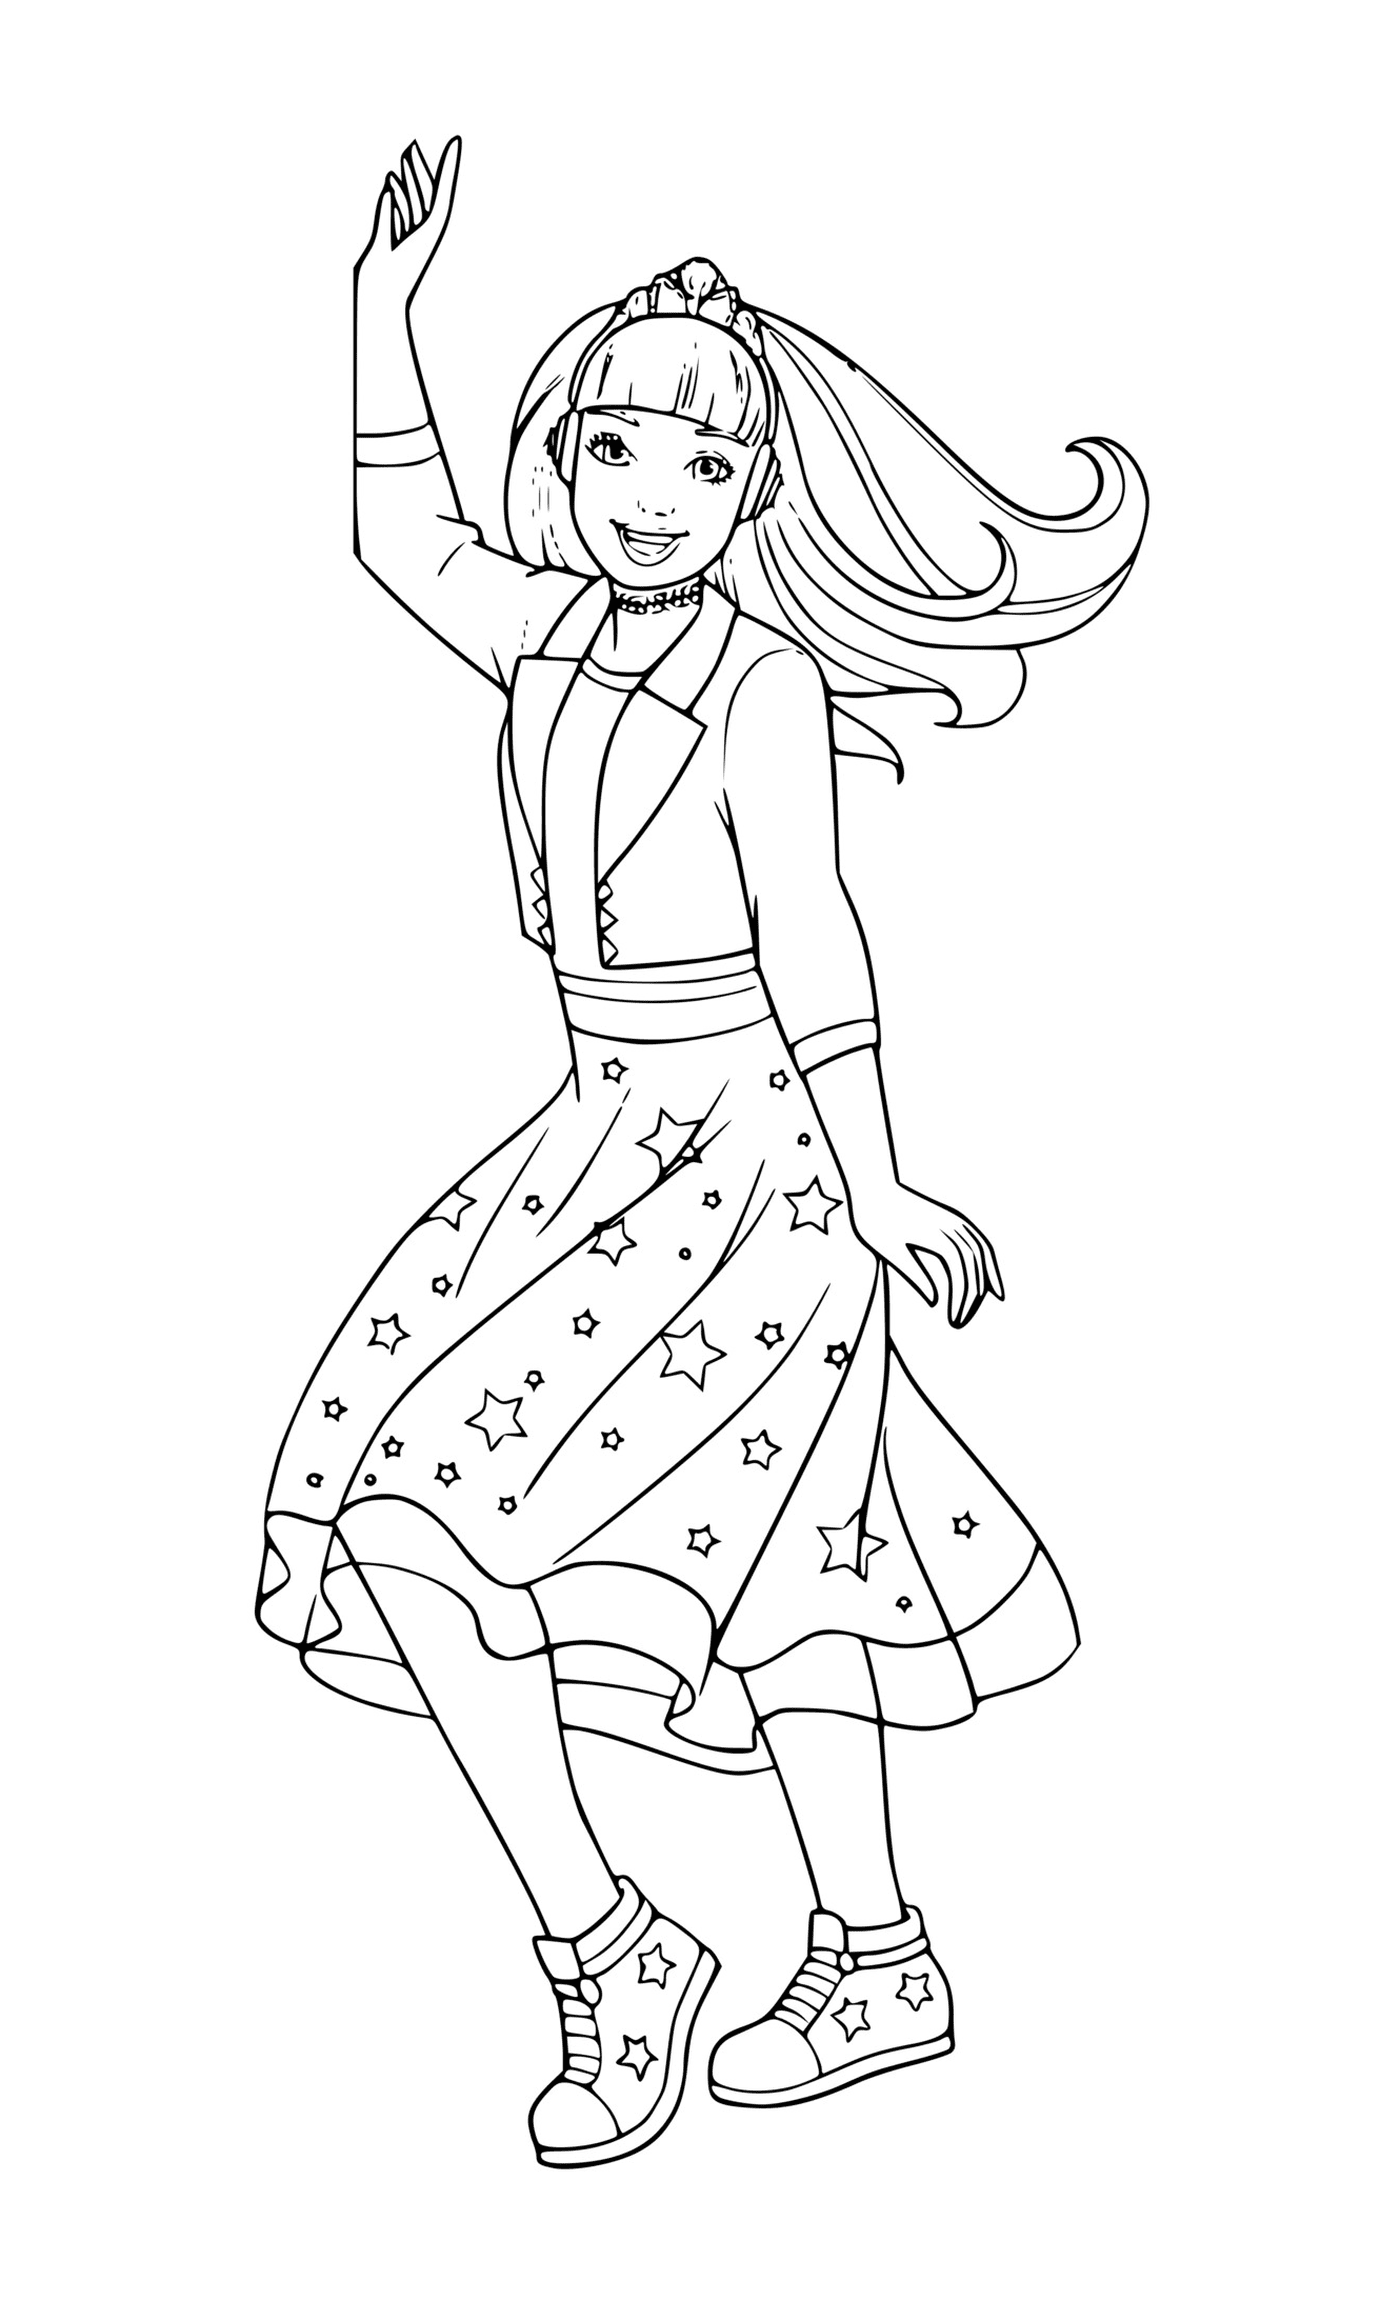  Una chica con un vestido estrellado bailando 